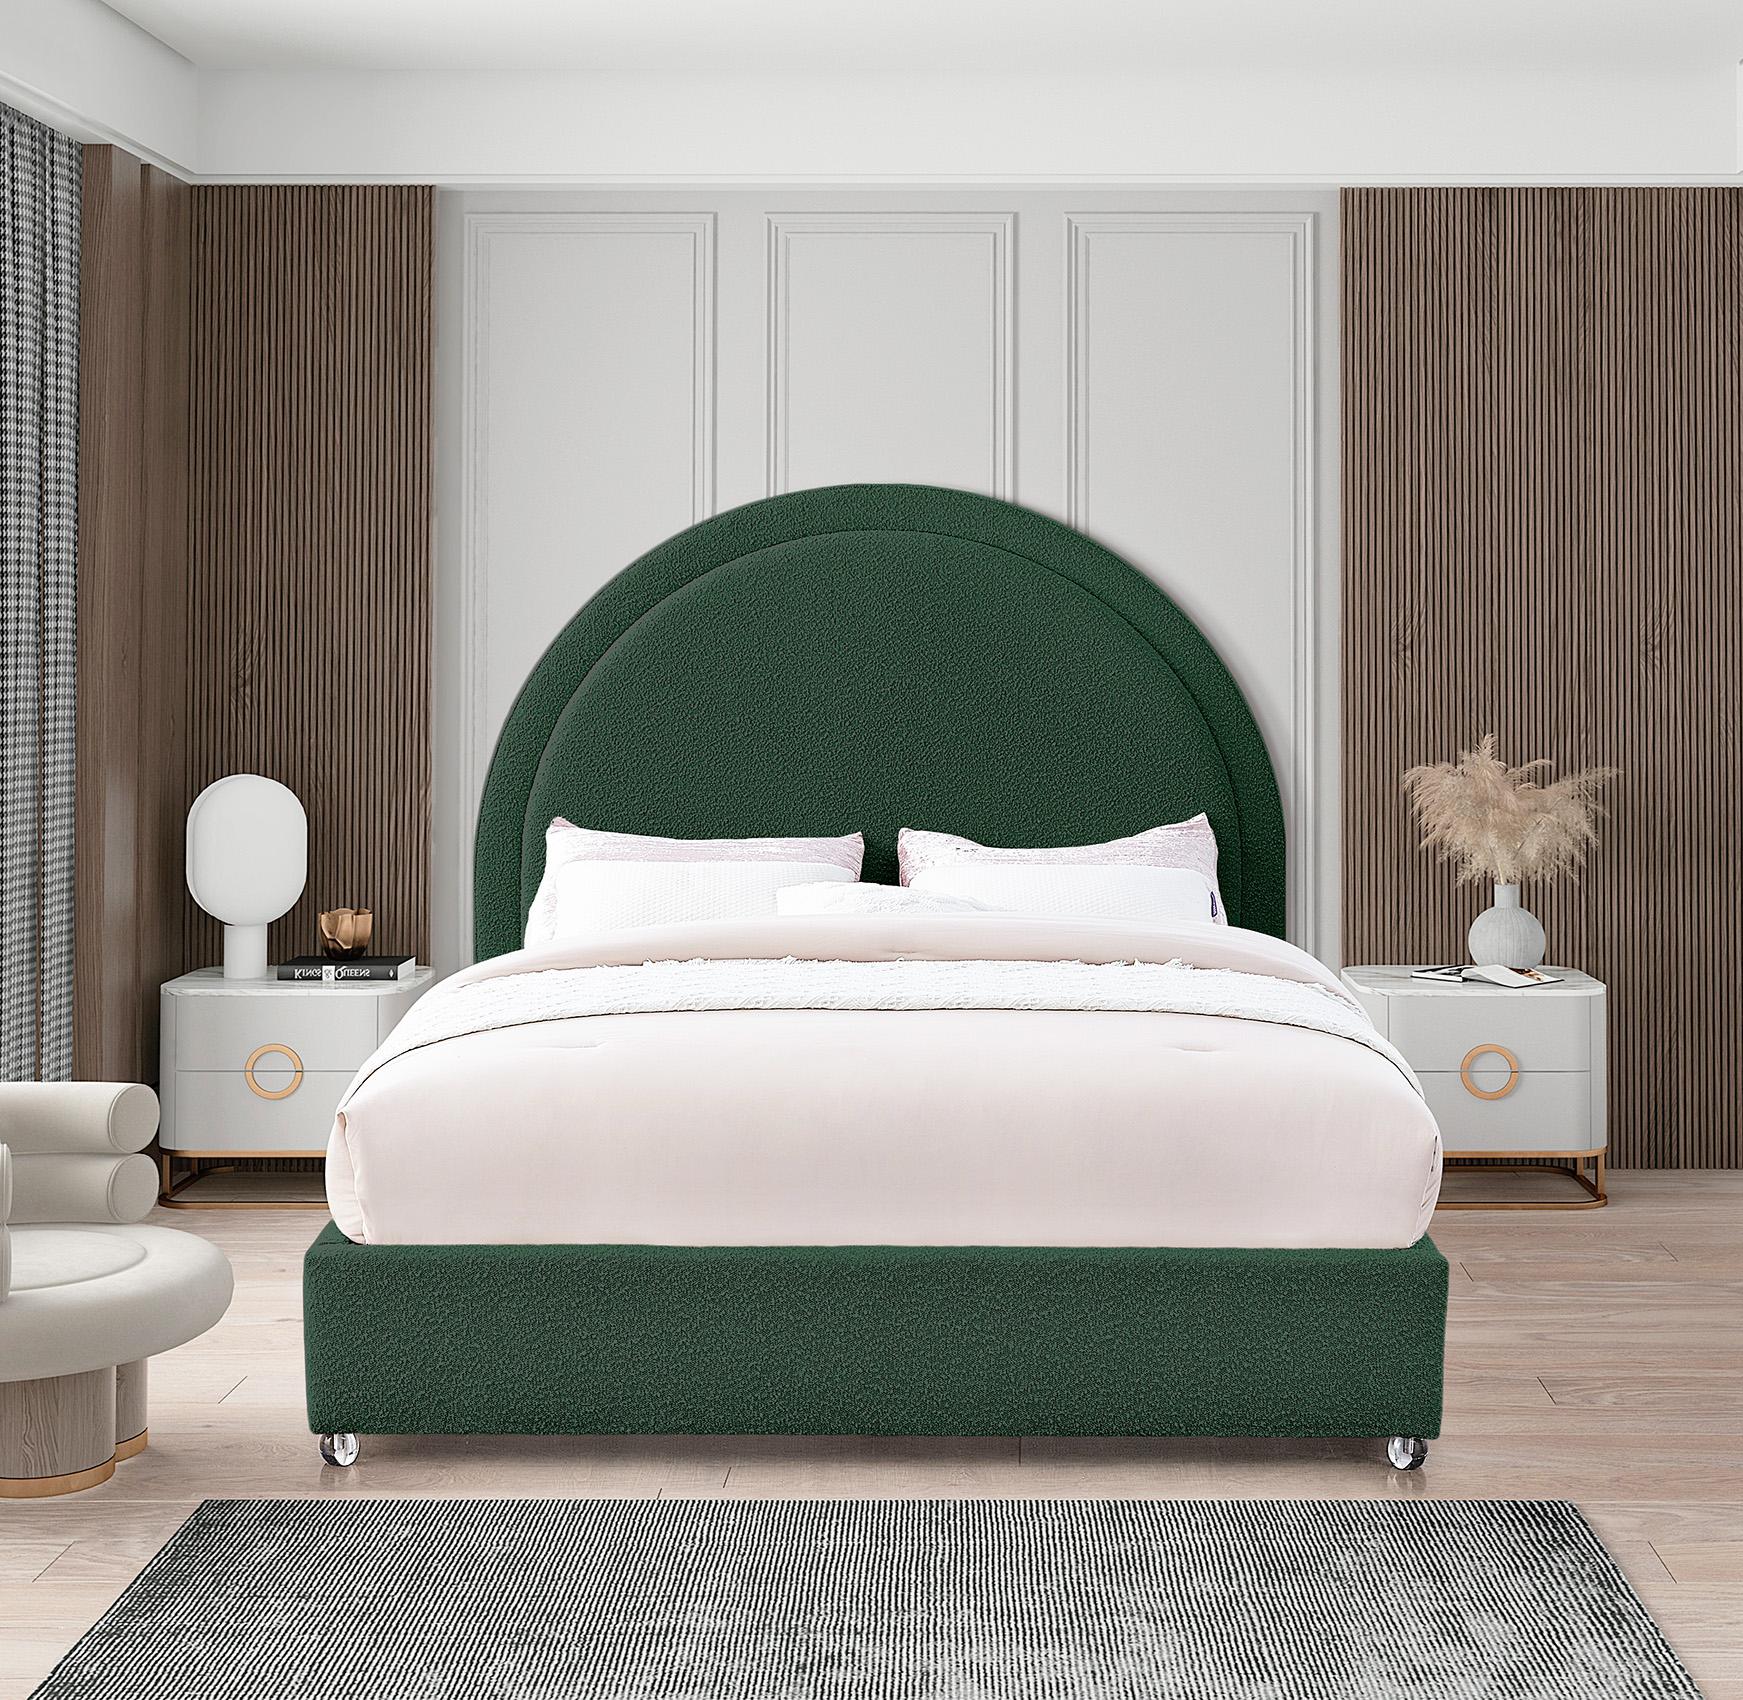 

    
Meridian Furniture MILO MiloGreen-Q Platform Bed Green MiloGreen-Q
